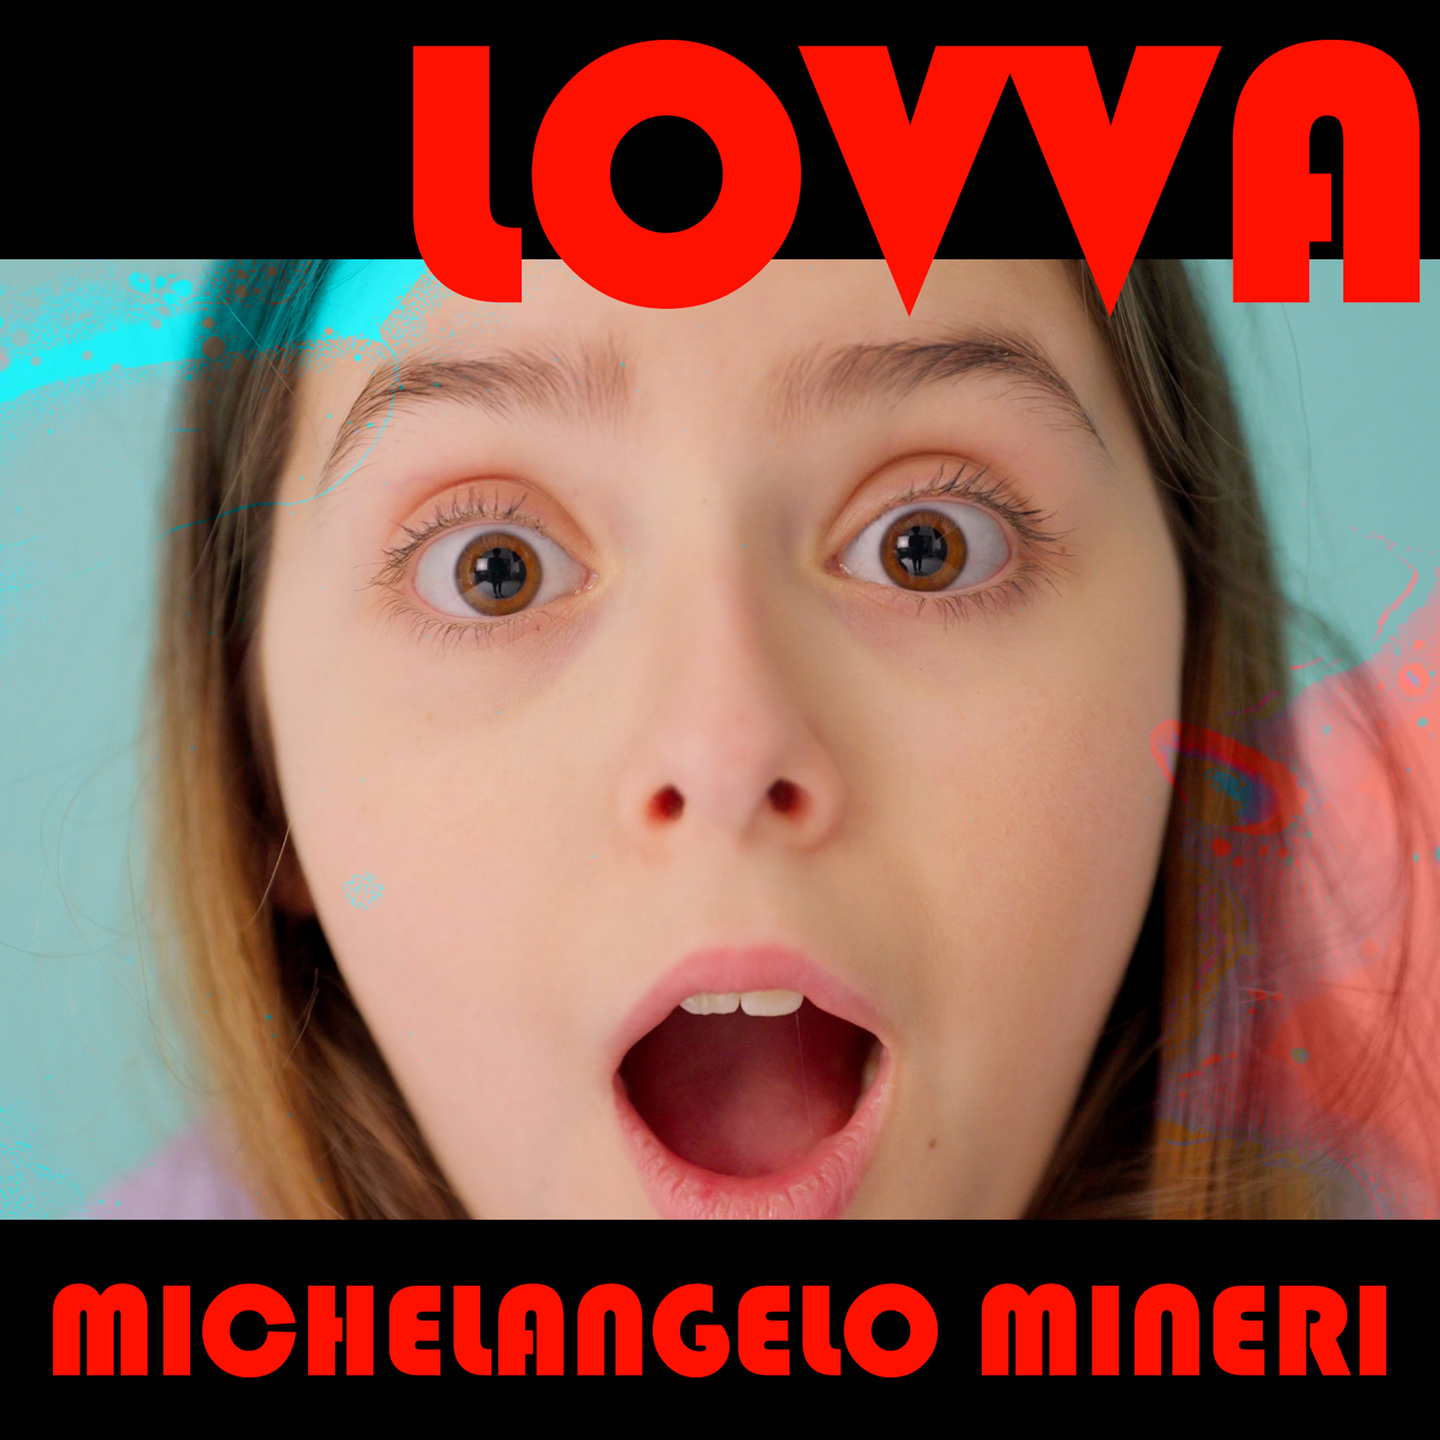 Michelangelo Mineri “LOVVA” è il nuovo singolo del cantautore romagnolo